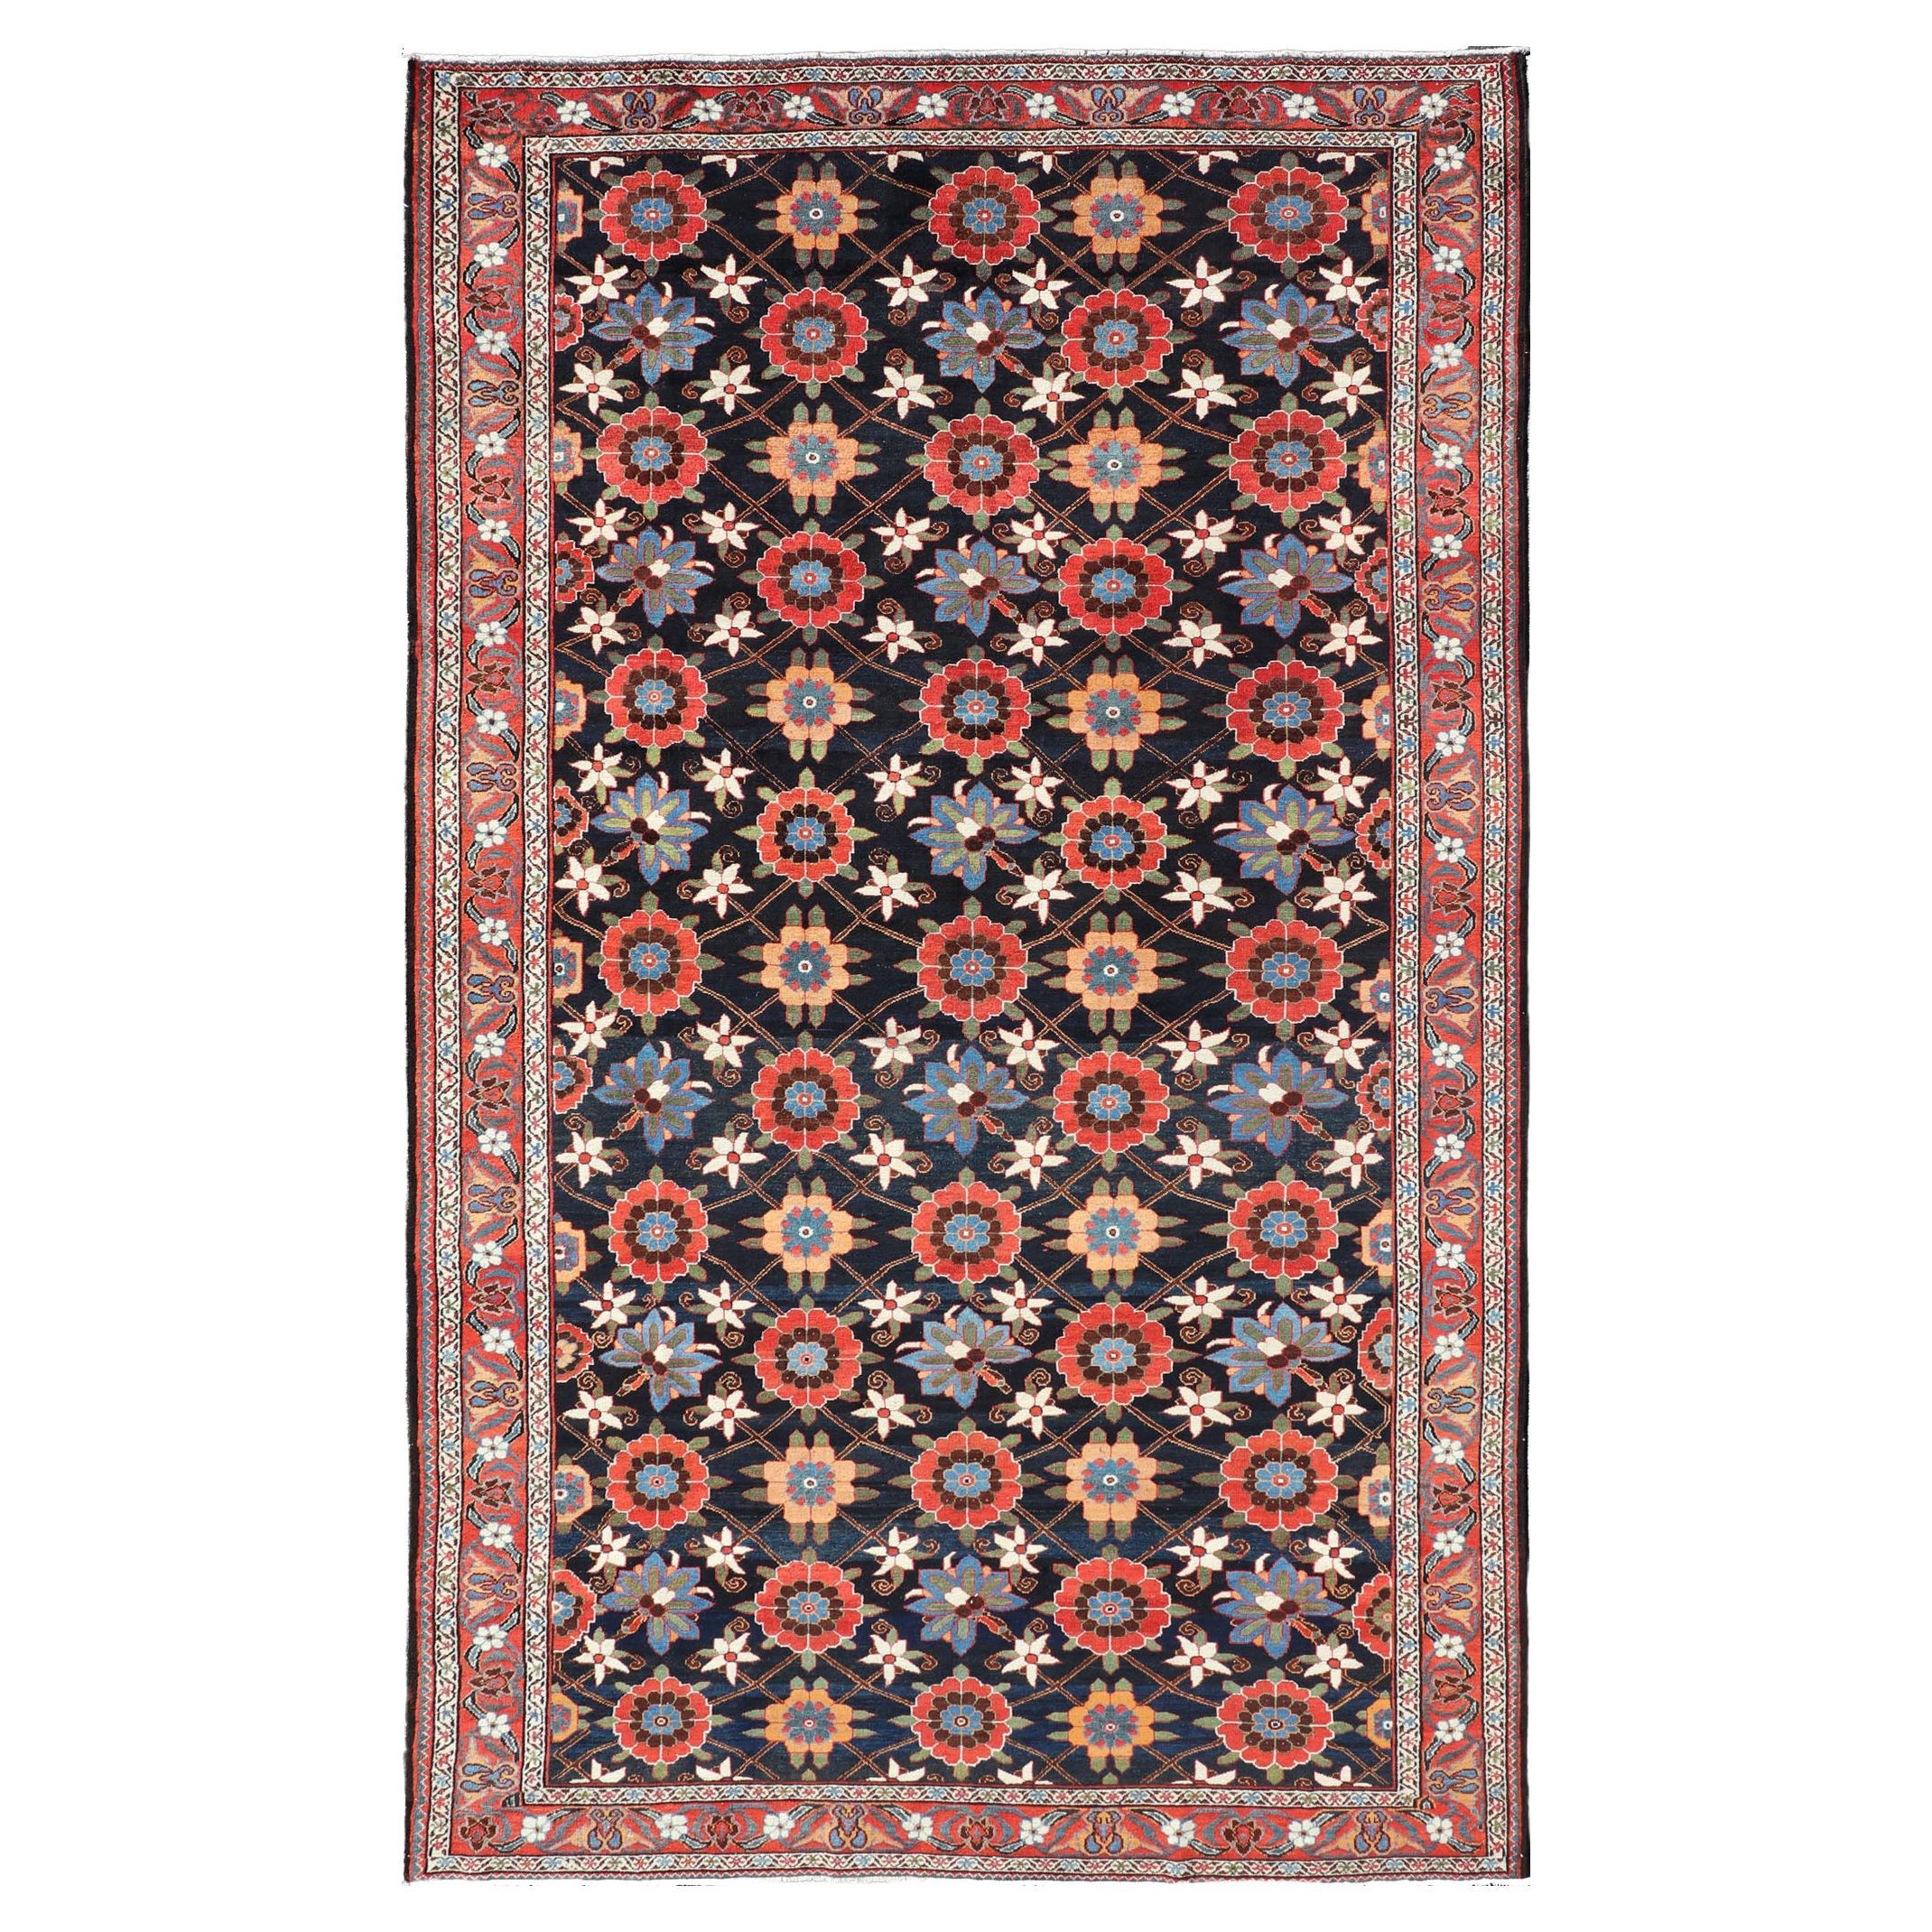 Handgeknüpfter antiker persischer Galerie-Bahitari-Teppich aus Wolle in floralem Design